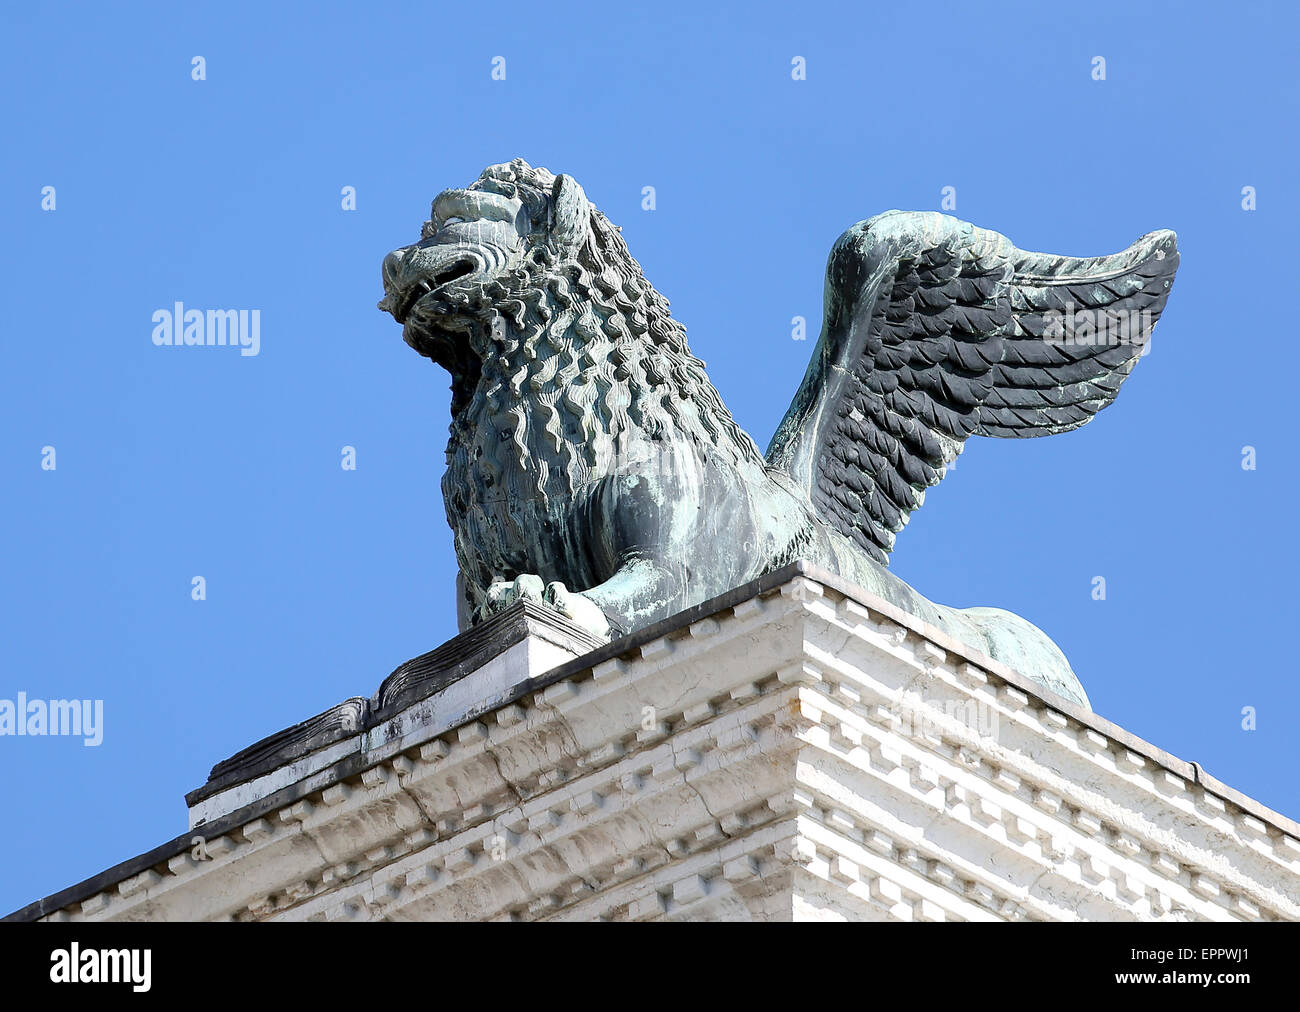 Statua del Leone alato di San Marco con la sua zampata oltre al libro Foto Stock